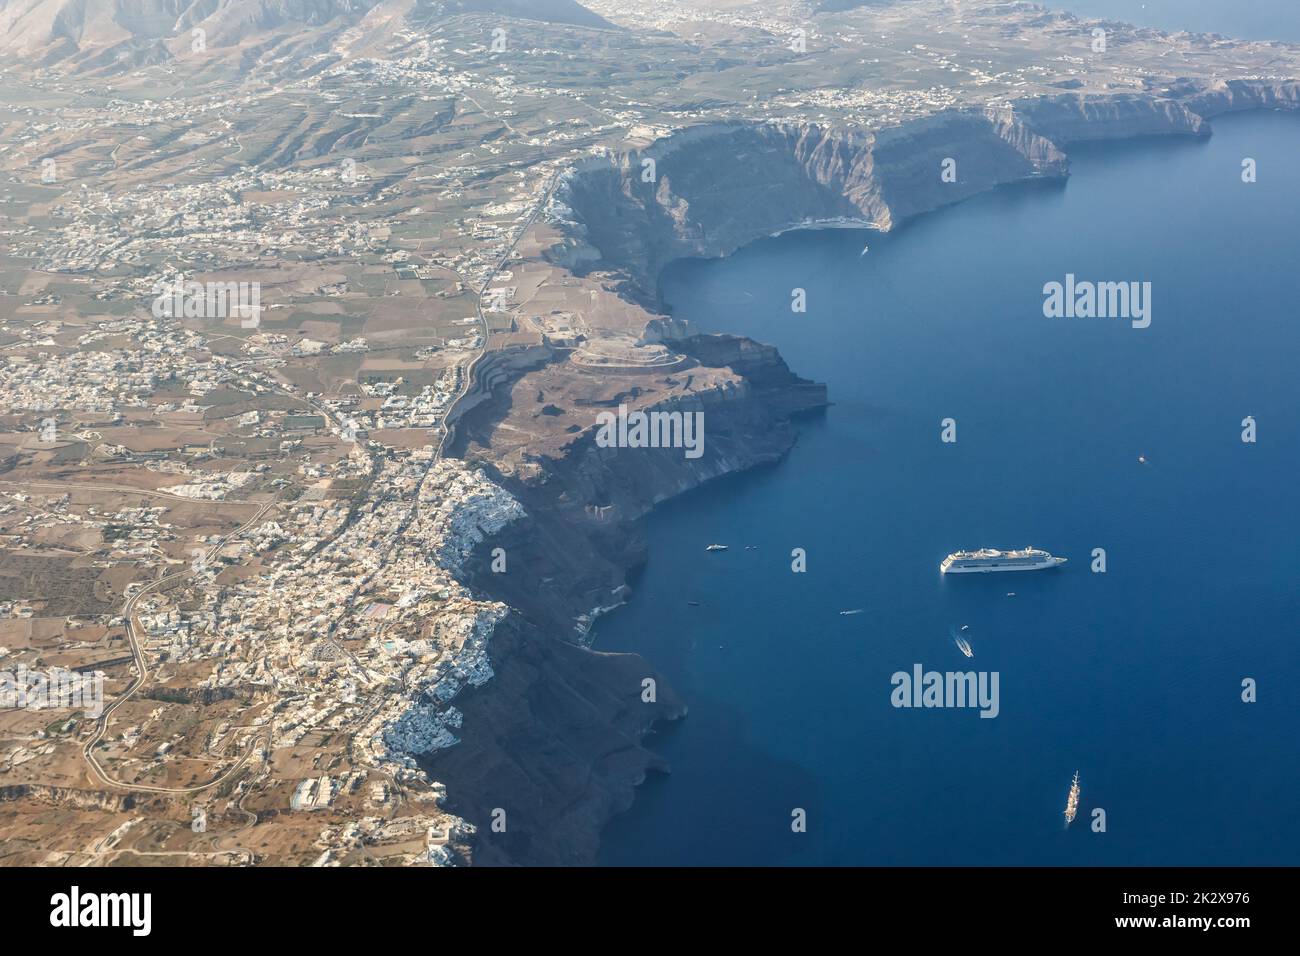 Vacances sur l'île de Santorini en Grèce voyage voyage Fira Thera ville Méditerranée Mer vue photo aérienne Santorin Banque D'Images